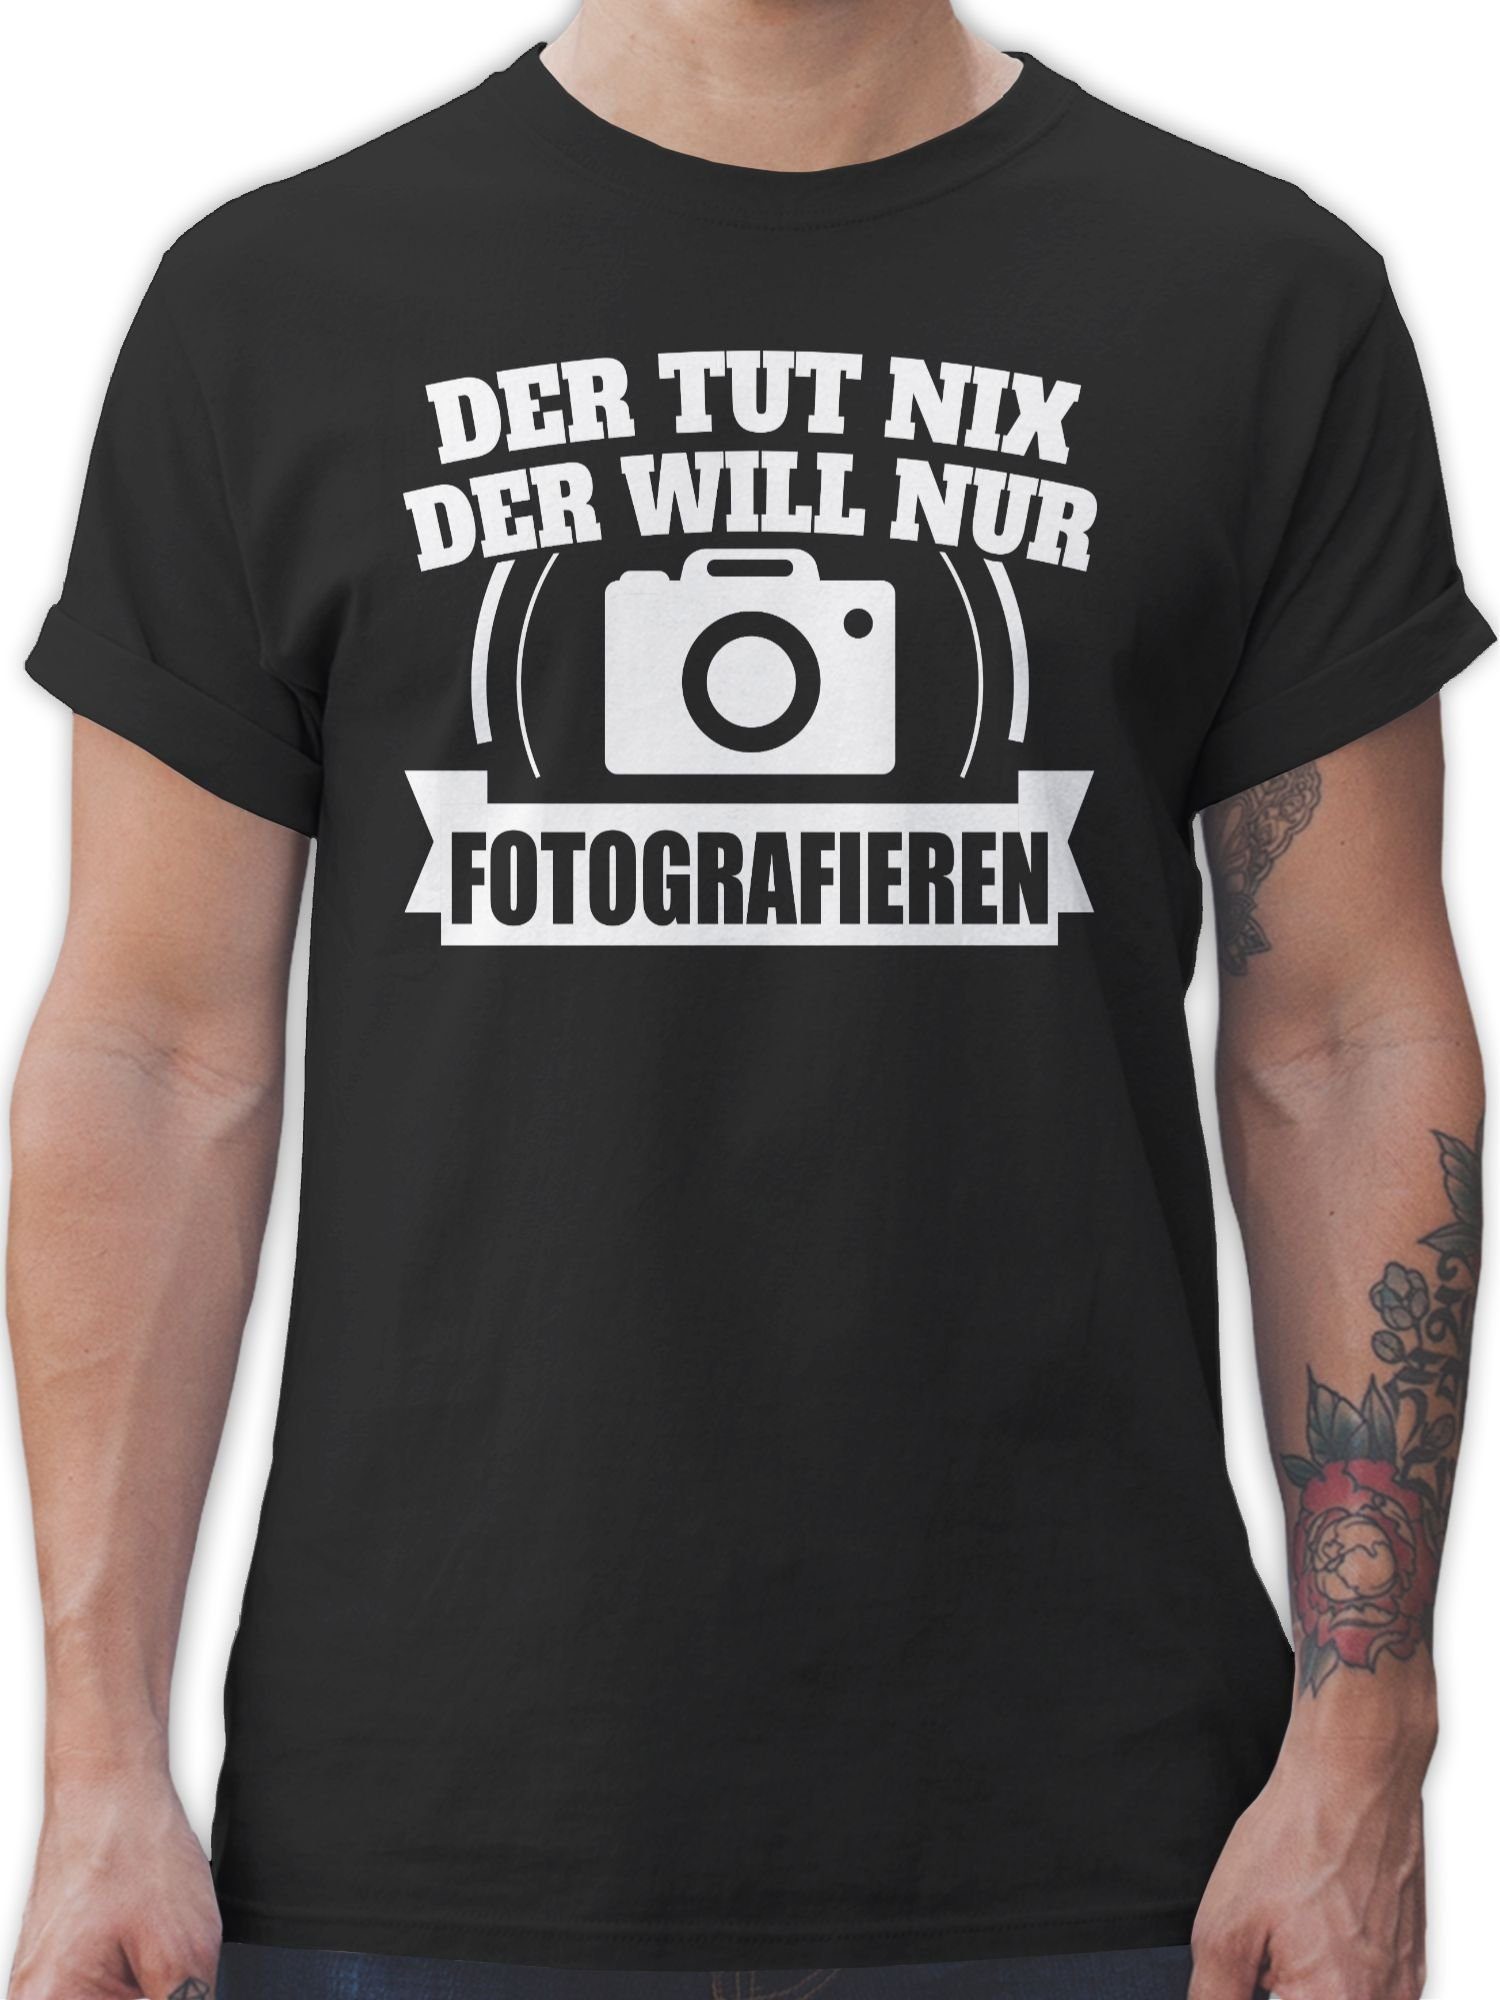 T-Shirt Fotografieren Spruch der will Schwarz Statement 1 Sprüche Der nur nix Shirtracer tut mit